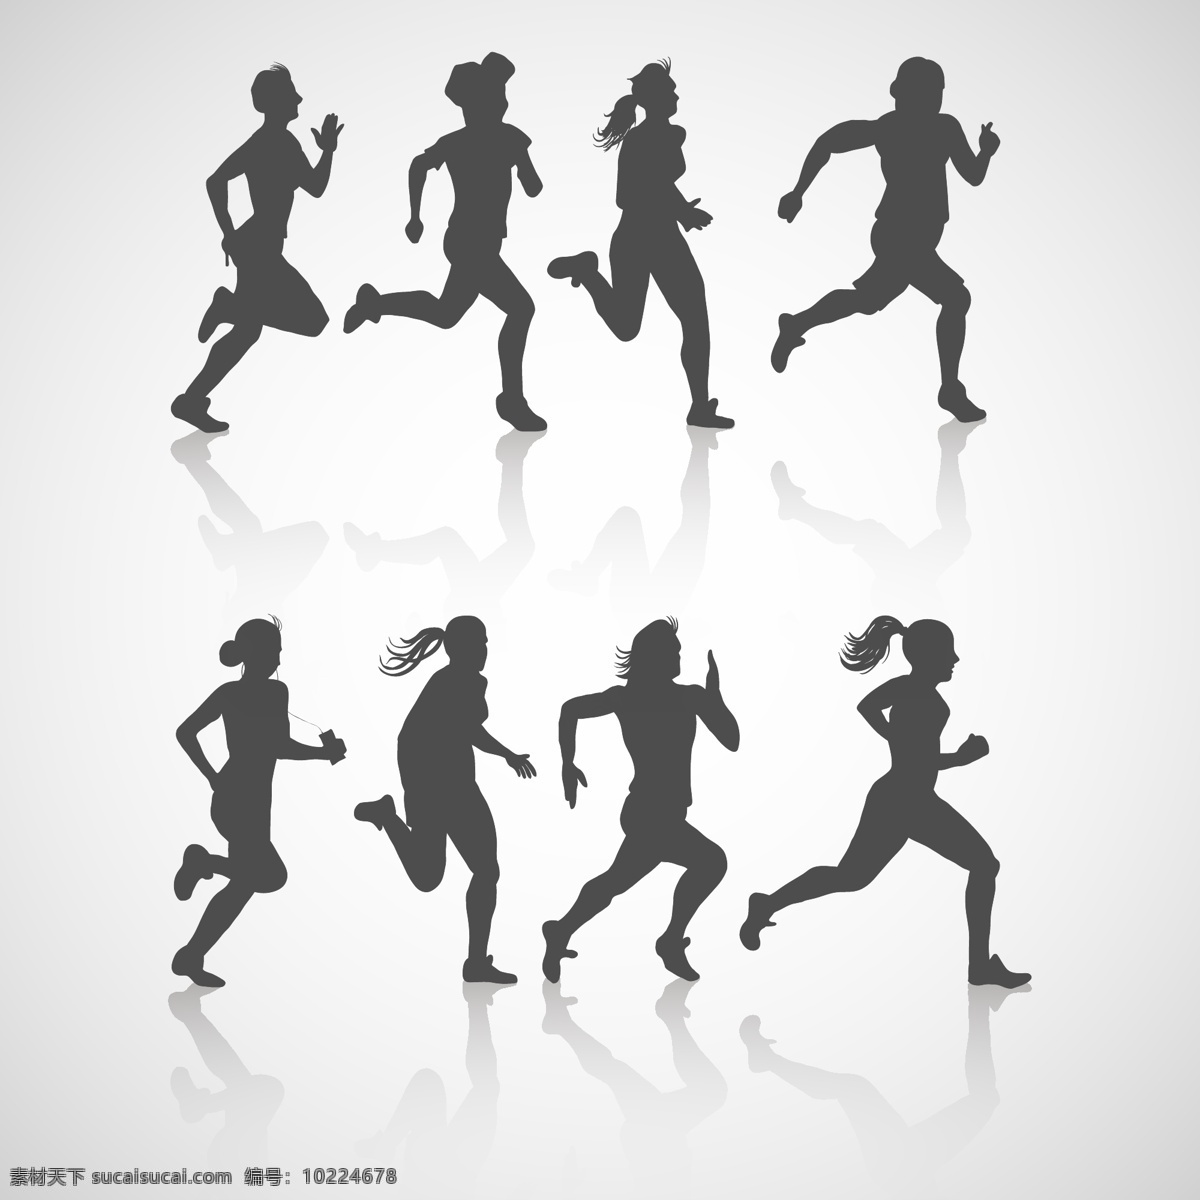 跑步 运动 体育运动 奥运会 田径比赛 慢跑 比赛 运动海报 运动比赛海报 运动员 户外运动 室内运动 运动俱乐部 体育馆海报 卡通设计